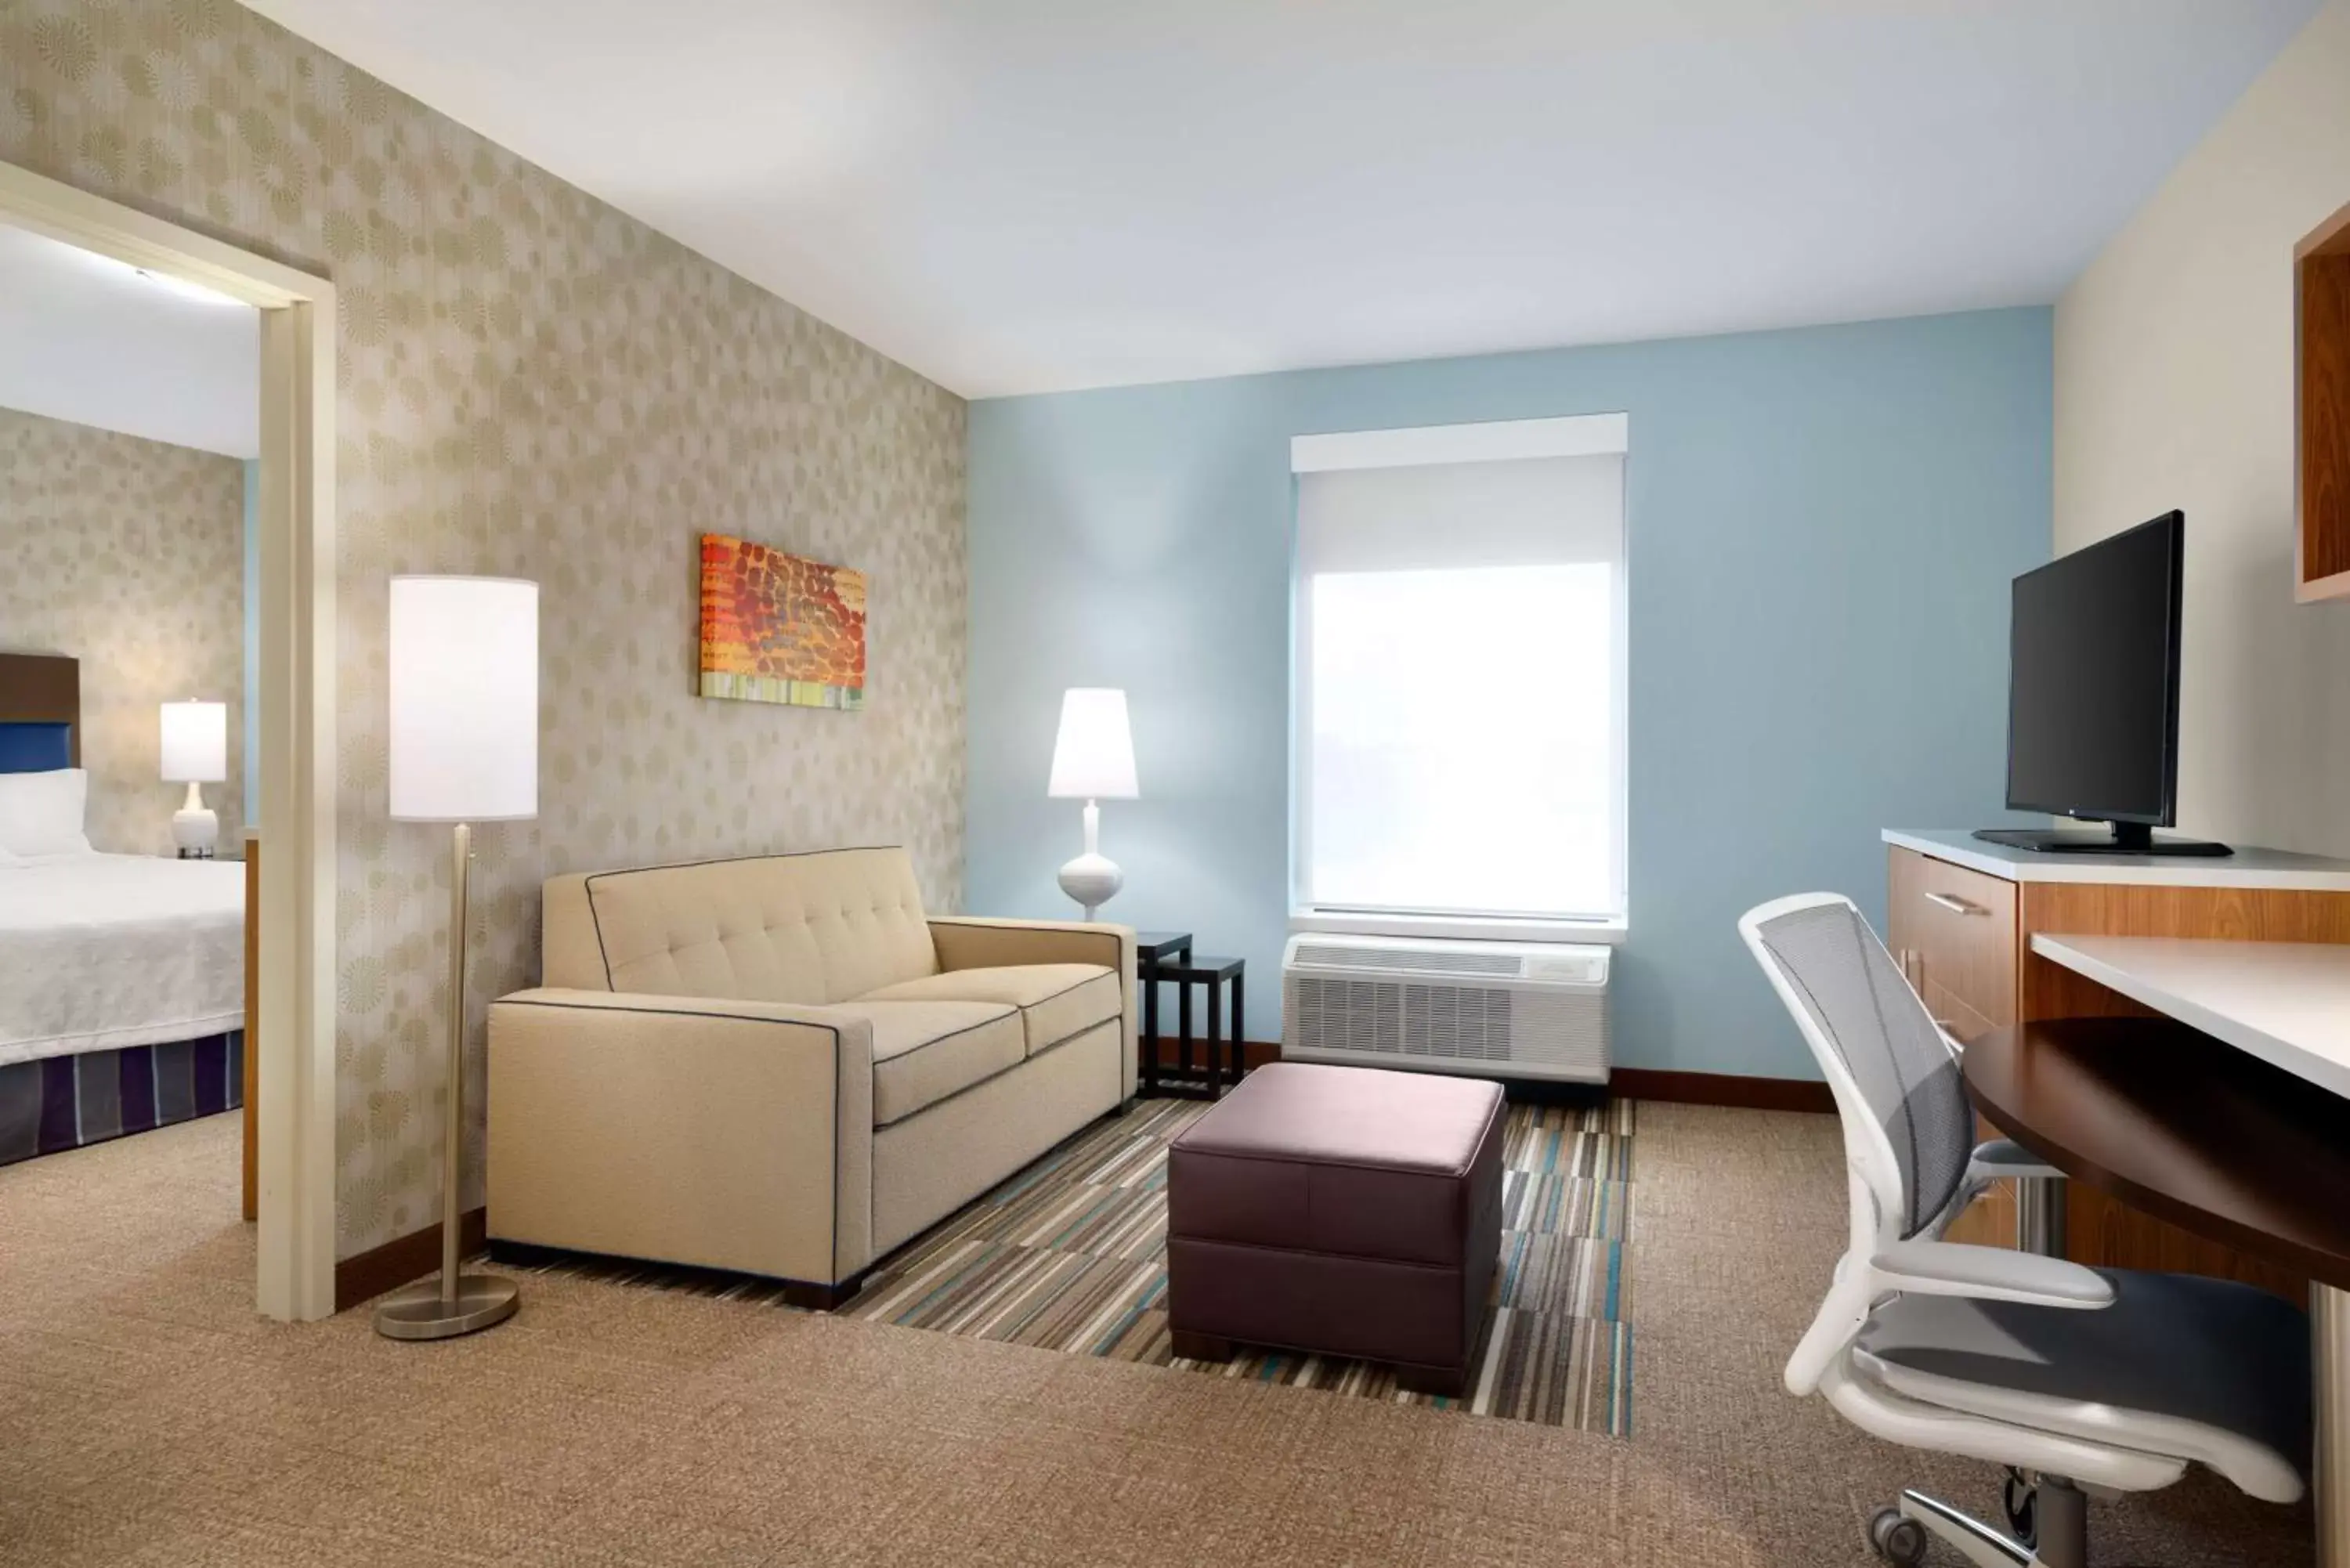 Bedroom, TV/Entertainment Center in Home2 Suites By Hilton Joliet Plainfield